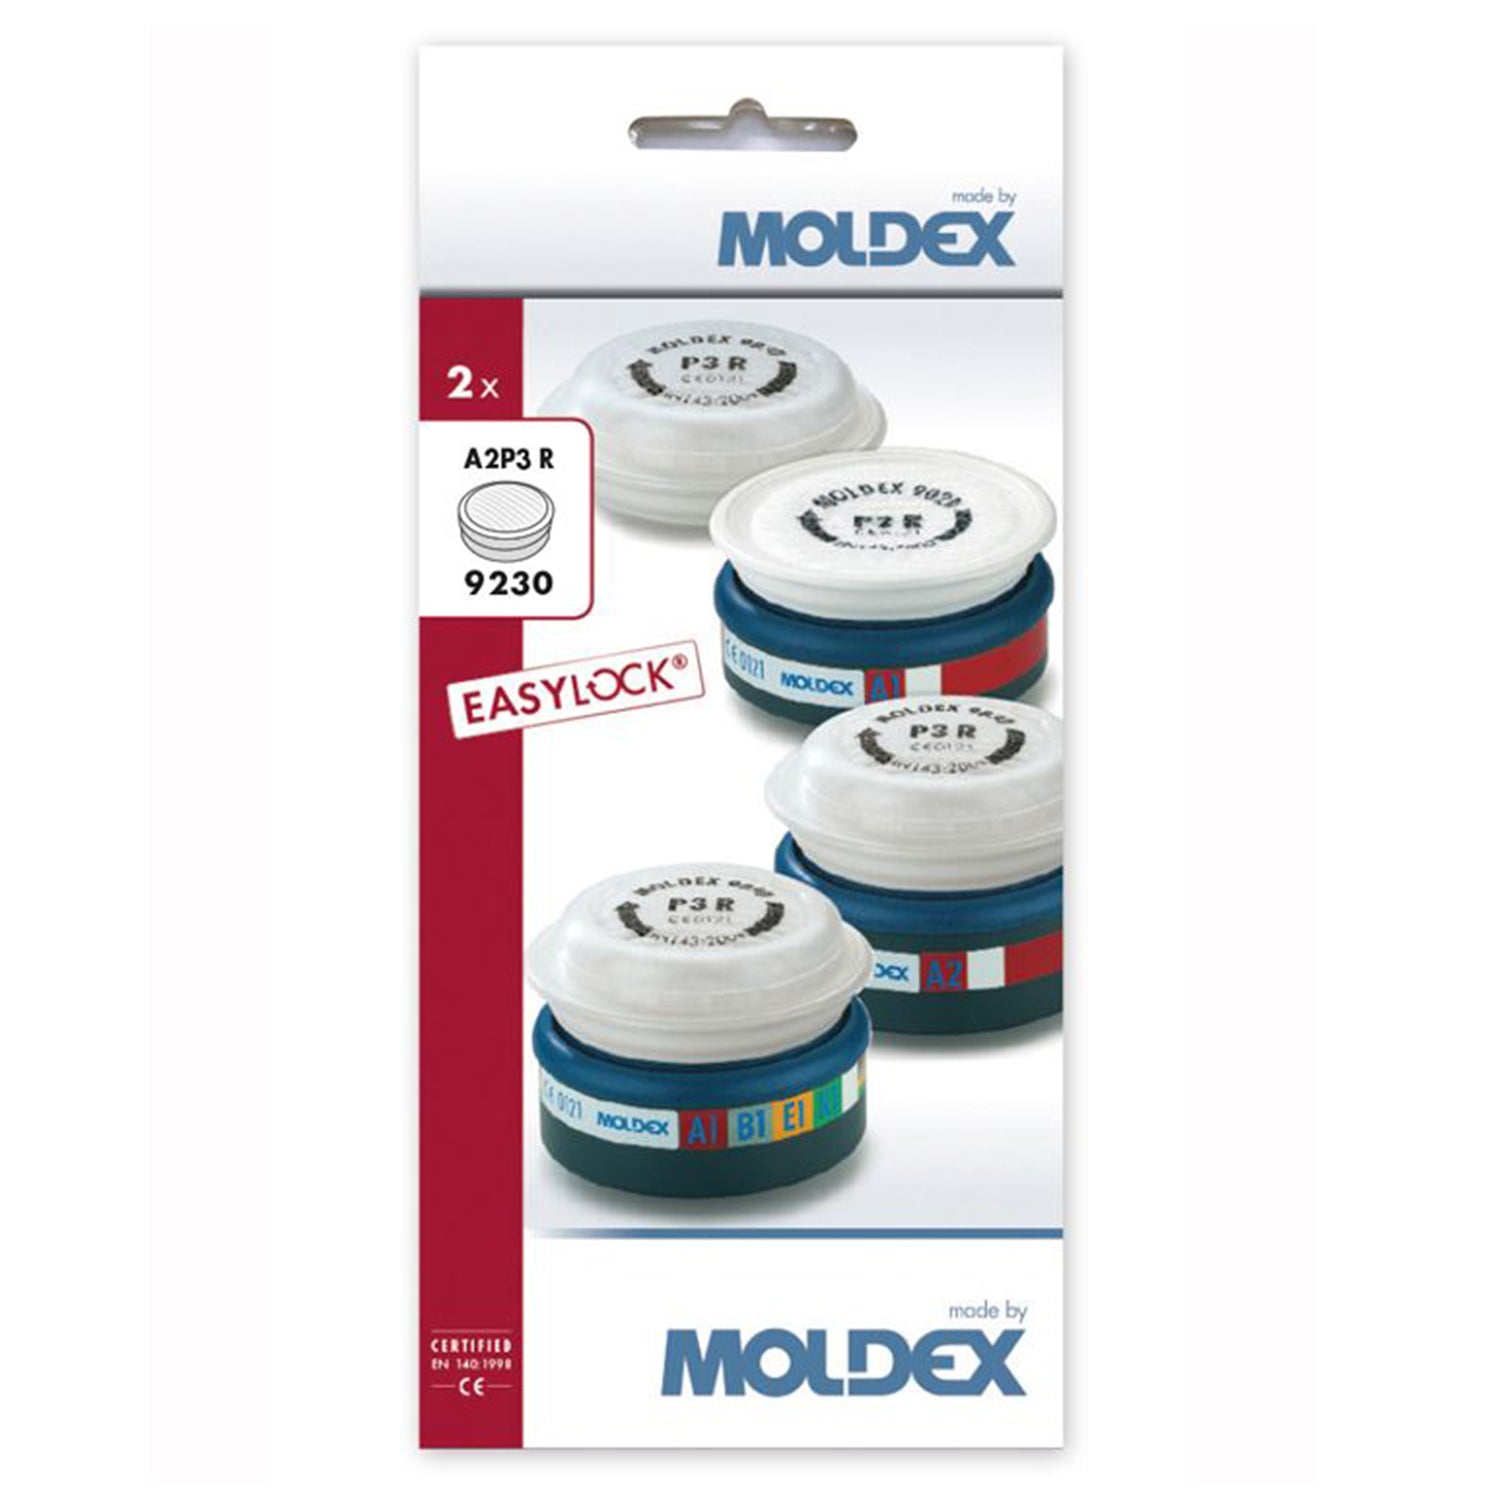 MOLDEX 9230 A2P3 R EasyLock Pre-assembled Filters